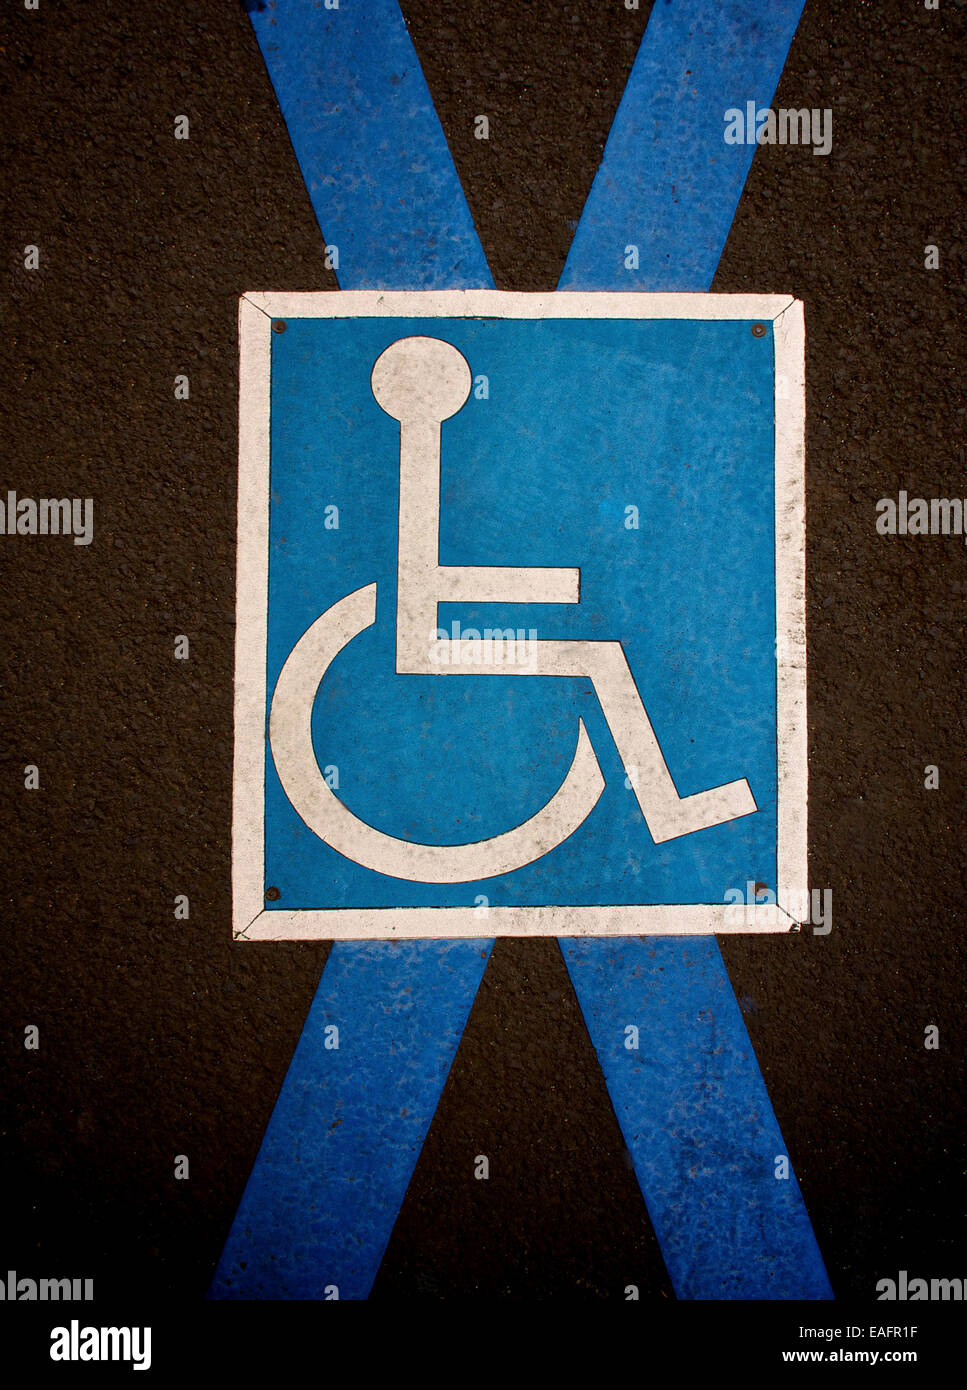 Stationnement pour handicapés pictogramme sur la chaussée. La France. L'Europe. Banque D'Images